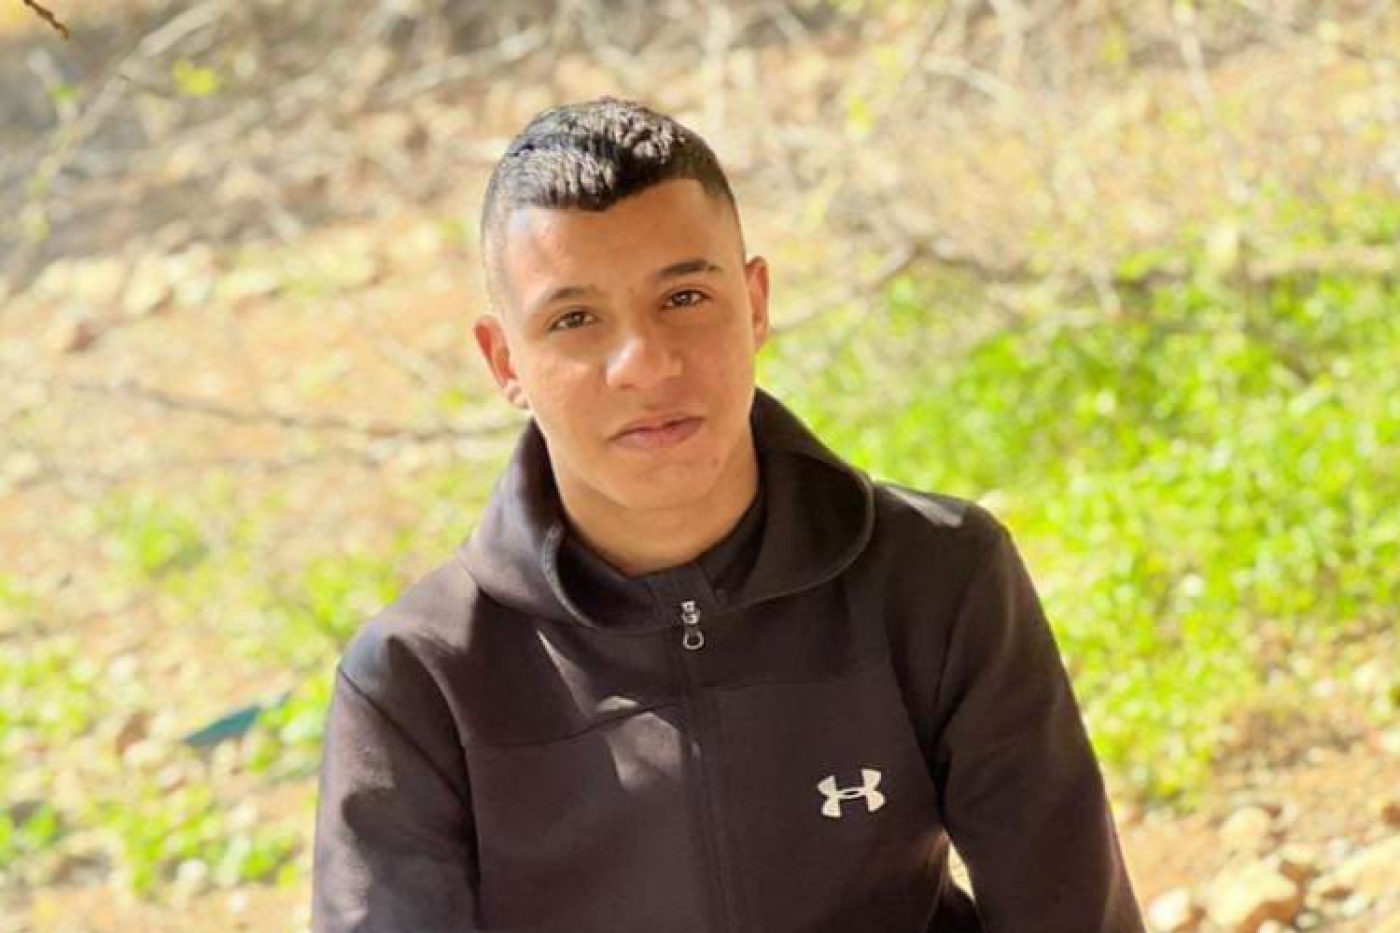 De zeventienjarige Palestijn Jibril Muhammad Al-Lada'a, die maandag bij een inval werd gedood (Twitter).